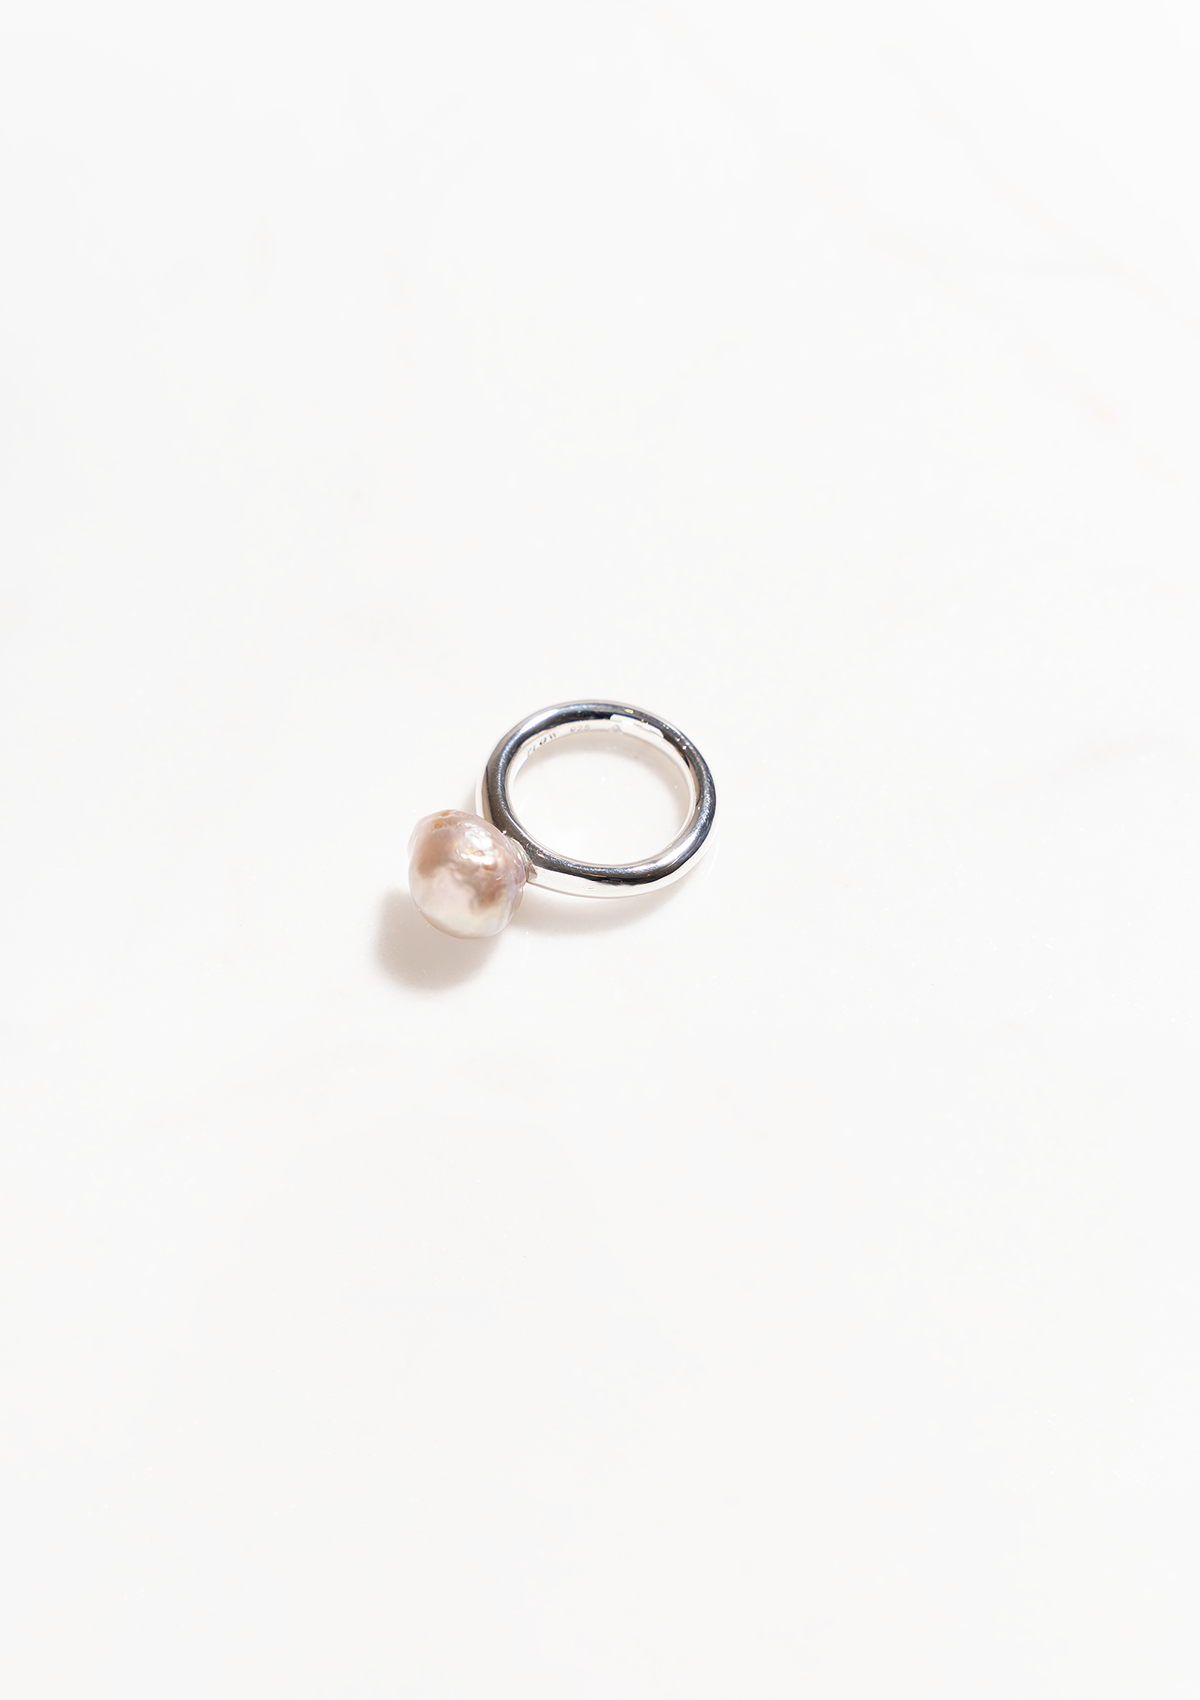 Kasumigaura Pearl Ring